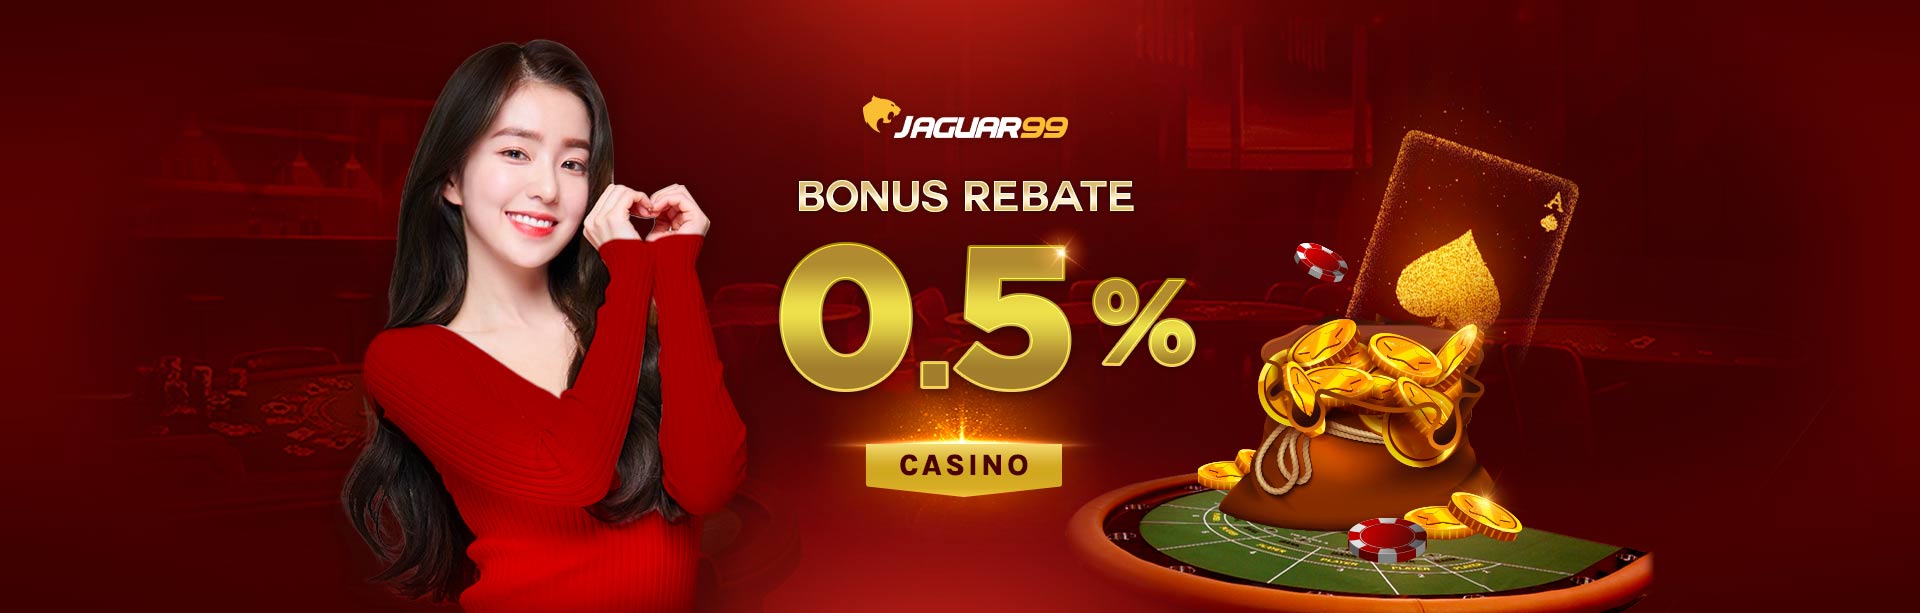 Jaguar99 Bonus Rebate 0.5% Casino